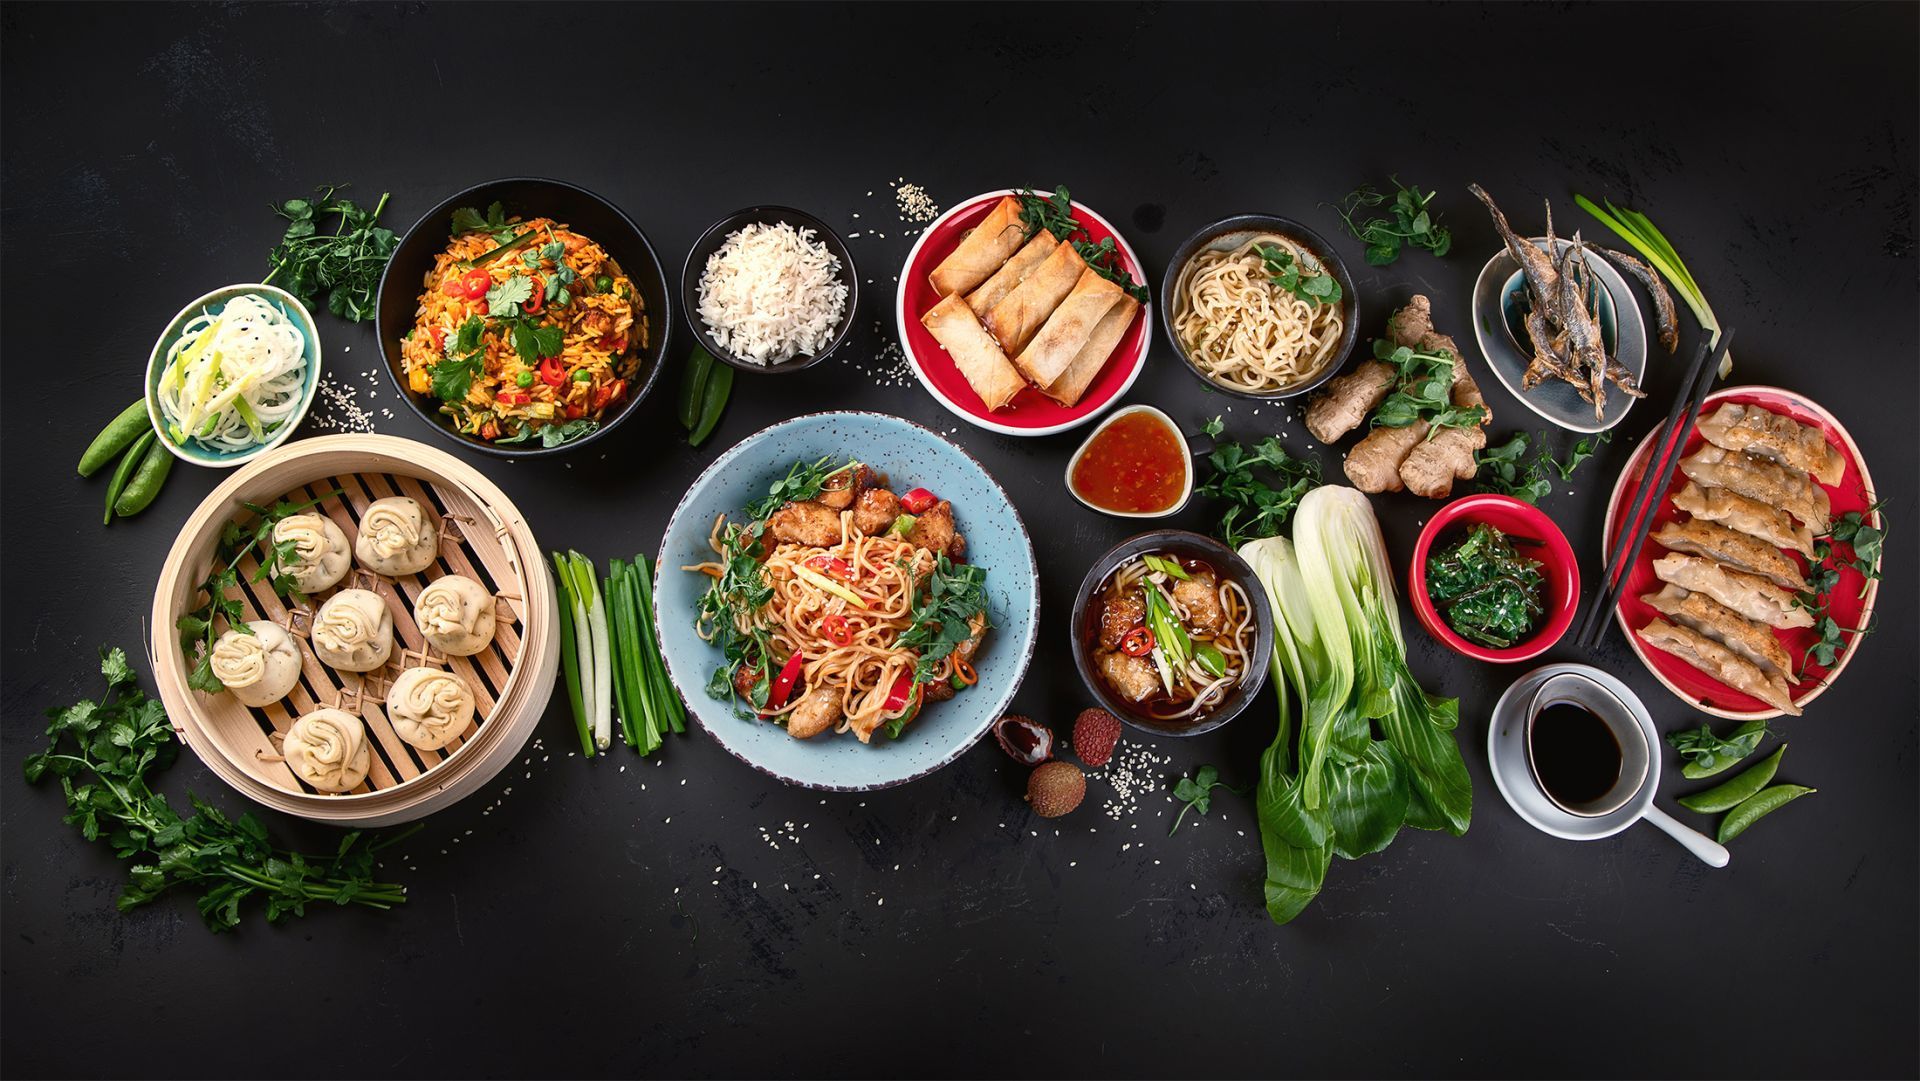 Odwiedz nas i odkryj smaki kuchni orientalnej